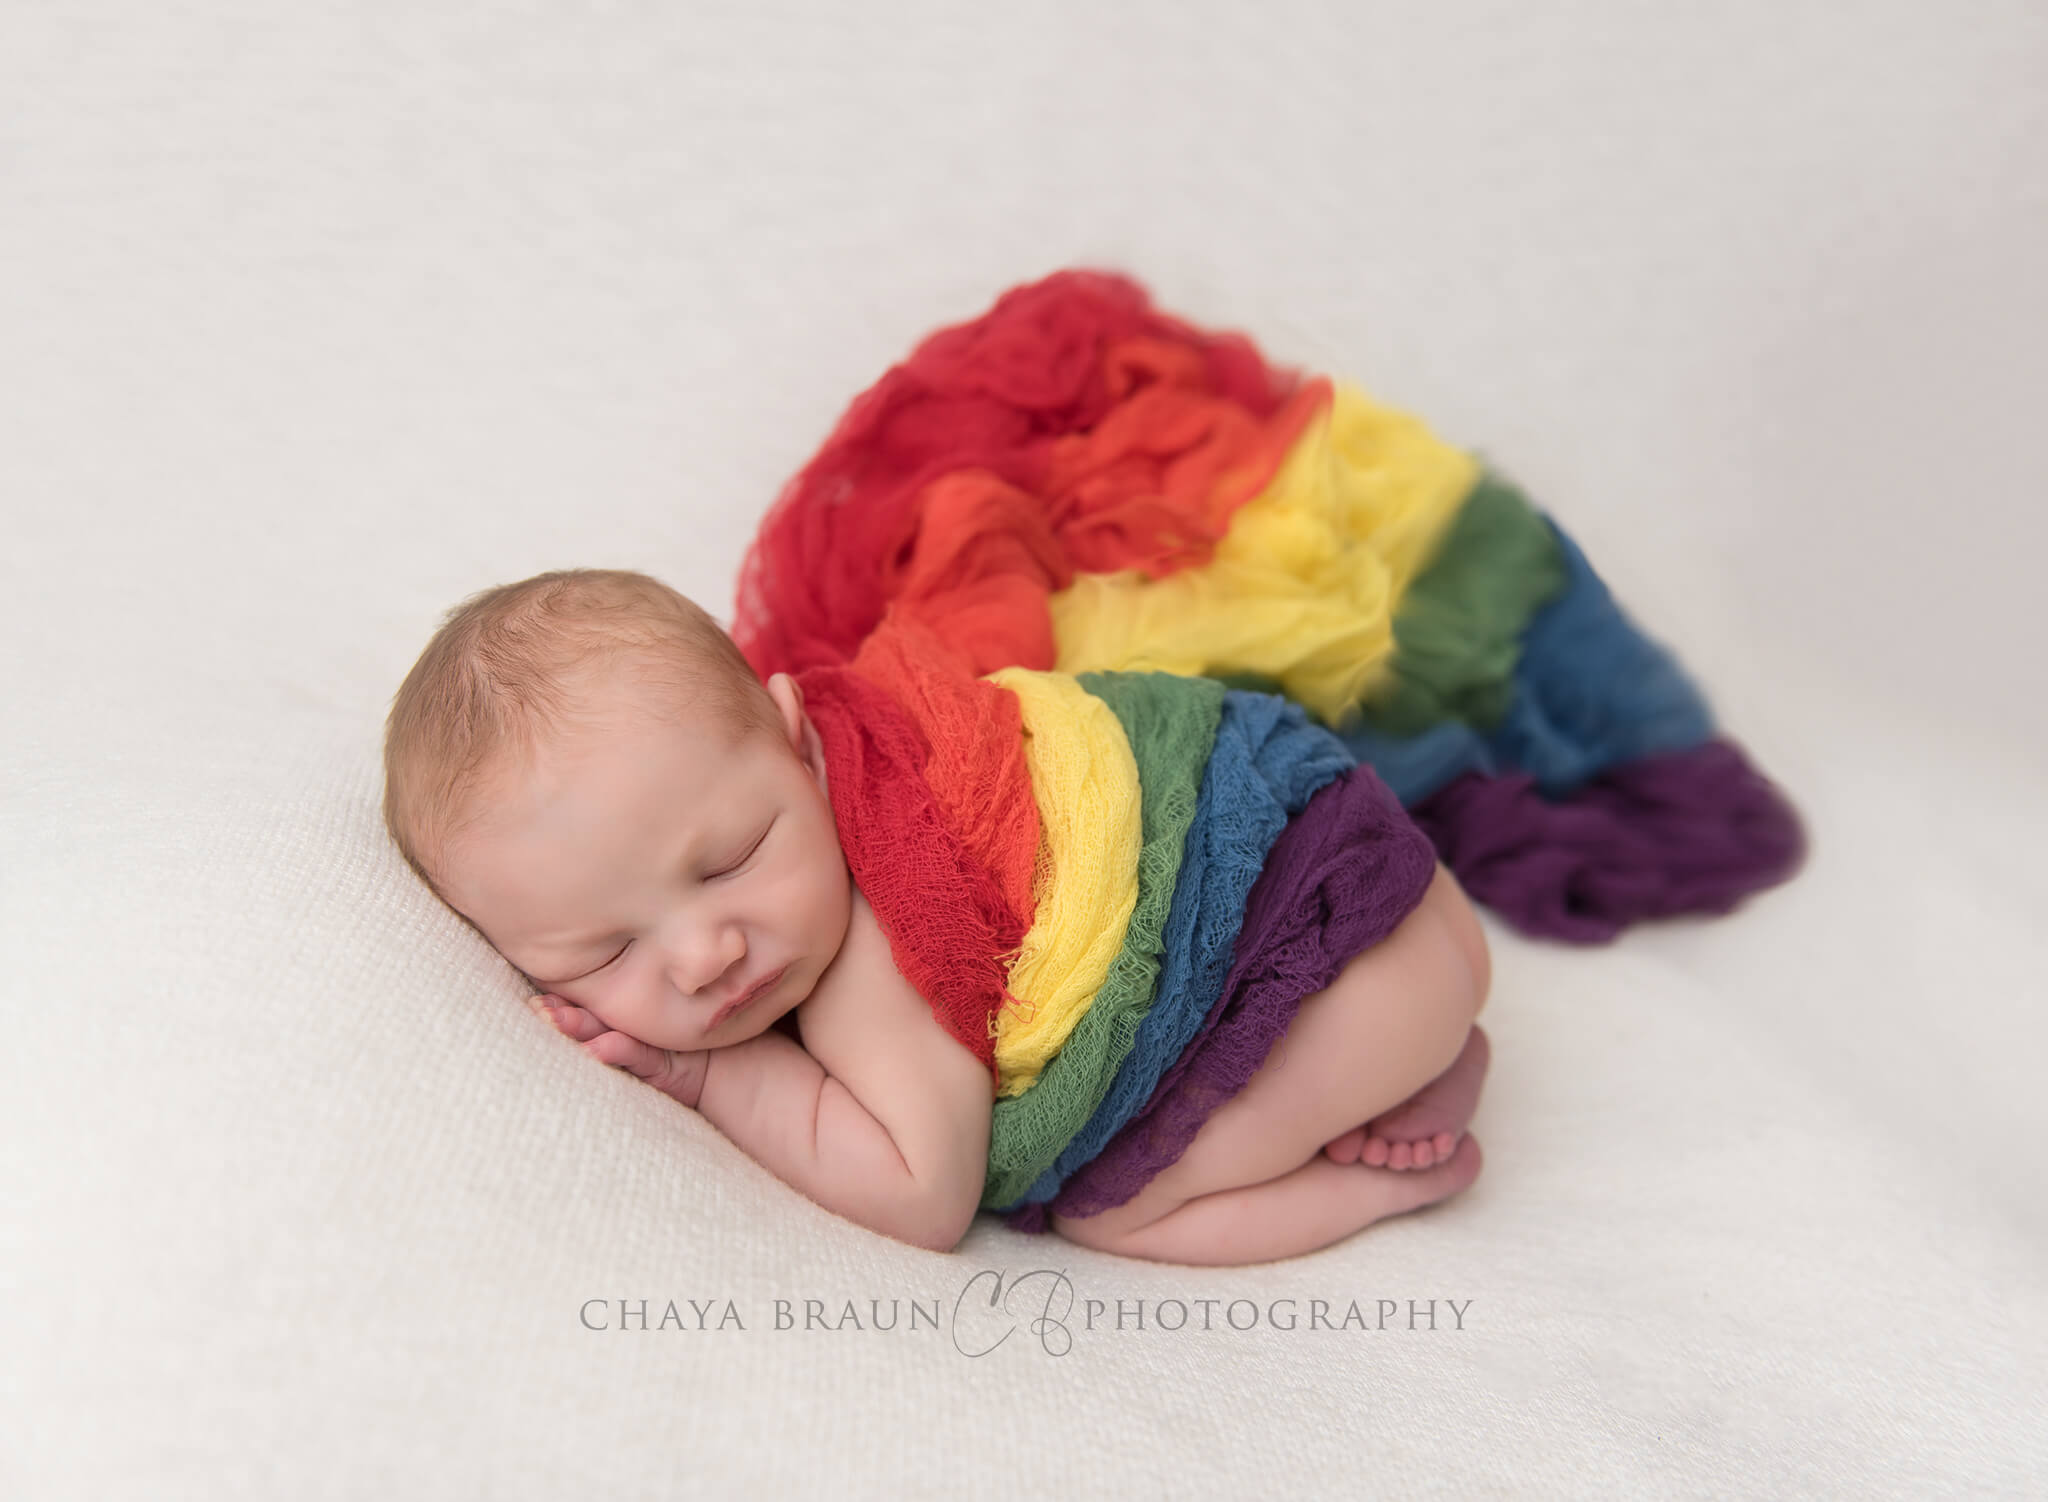 rainbow baby